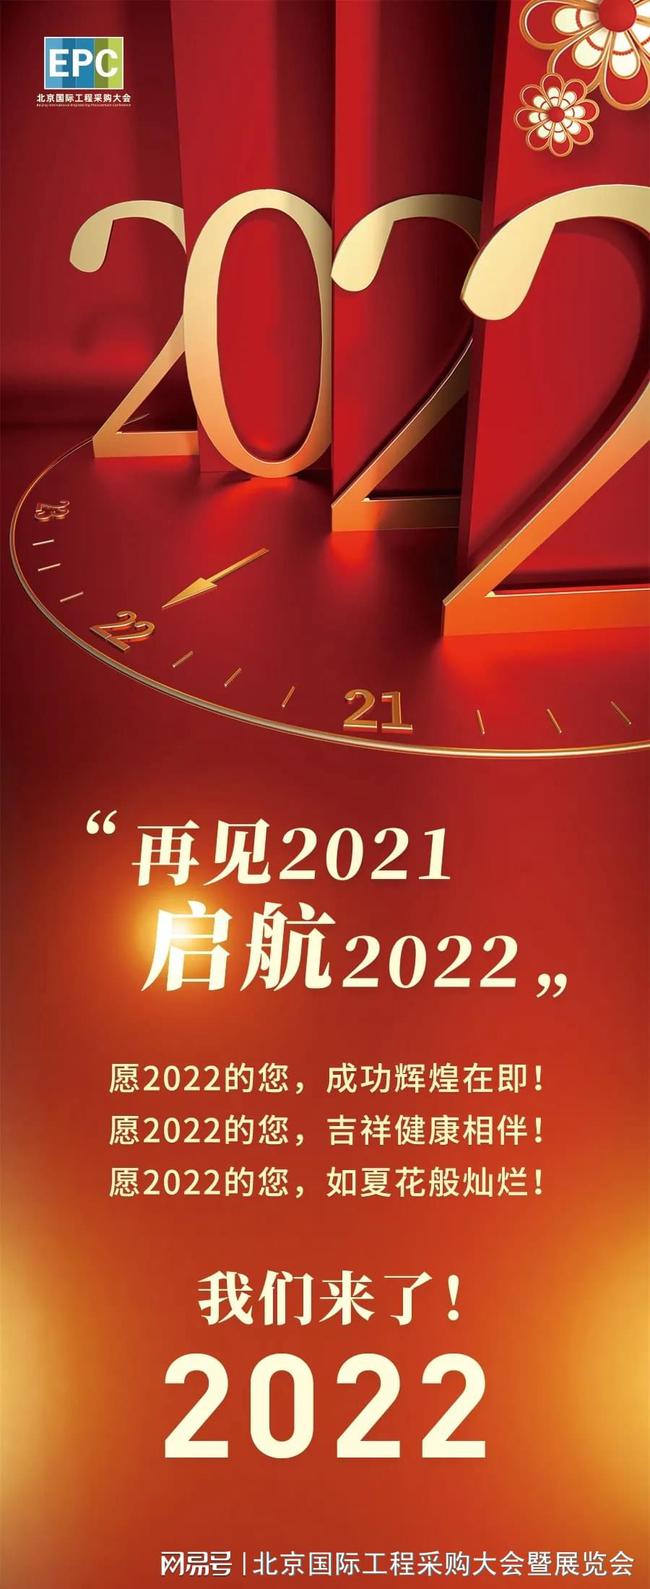 2021跨年之夜中国五冶集团实现新签订单超1200亿元